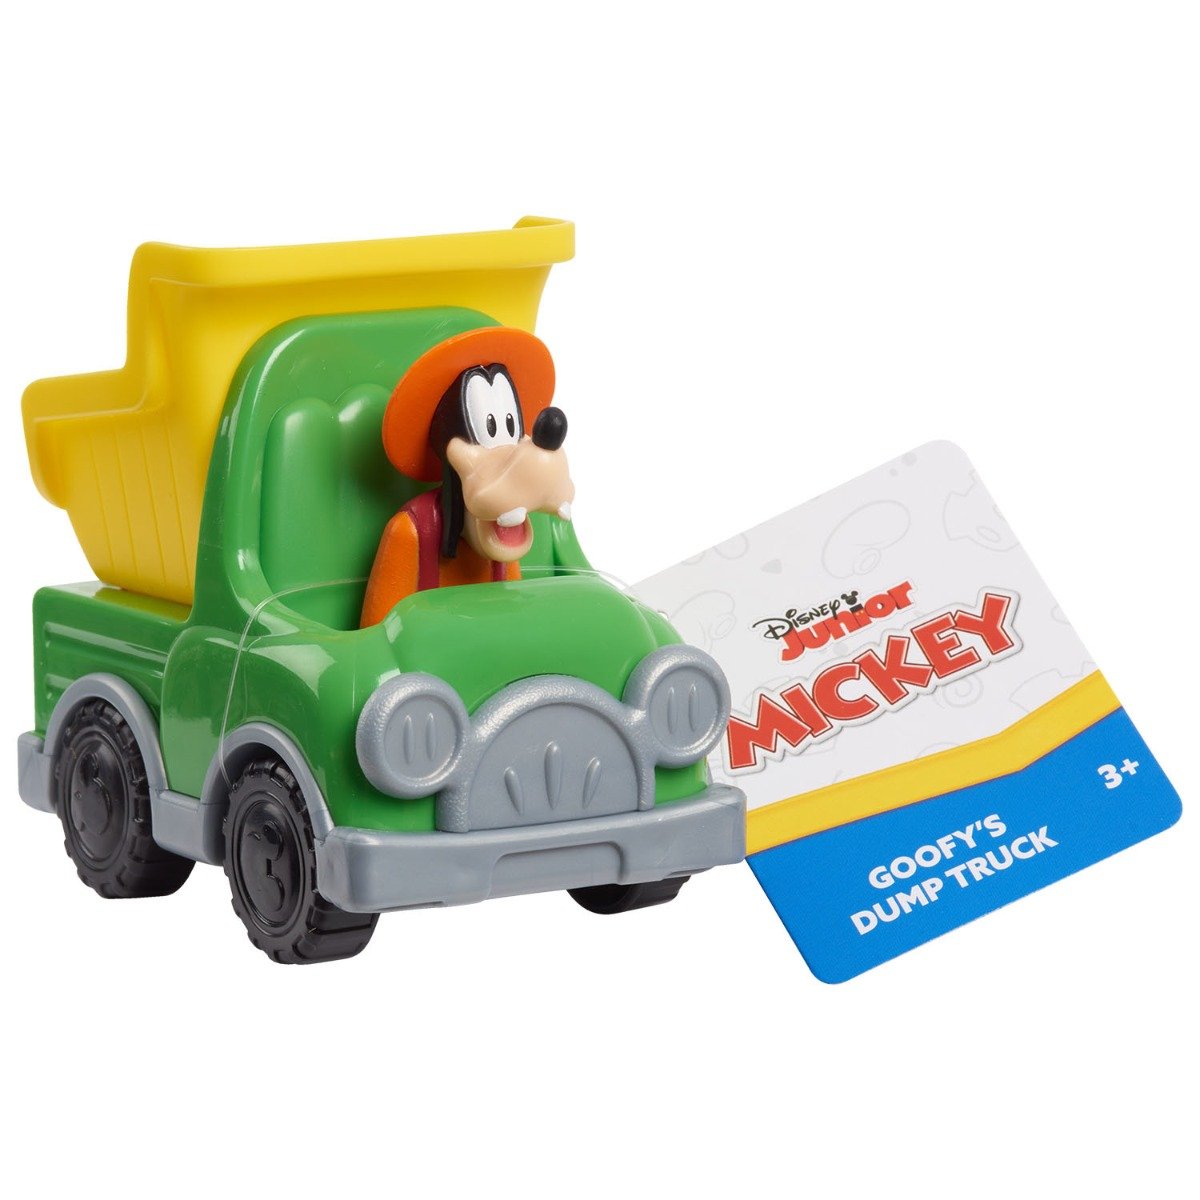 Figurina Mickey Mouse, Goofy in masinuta, 38736 38736